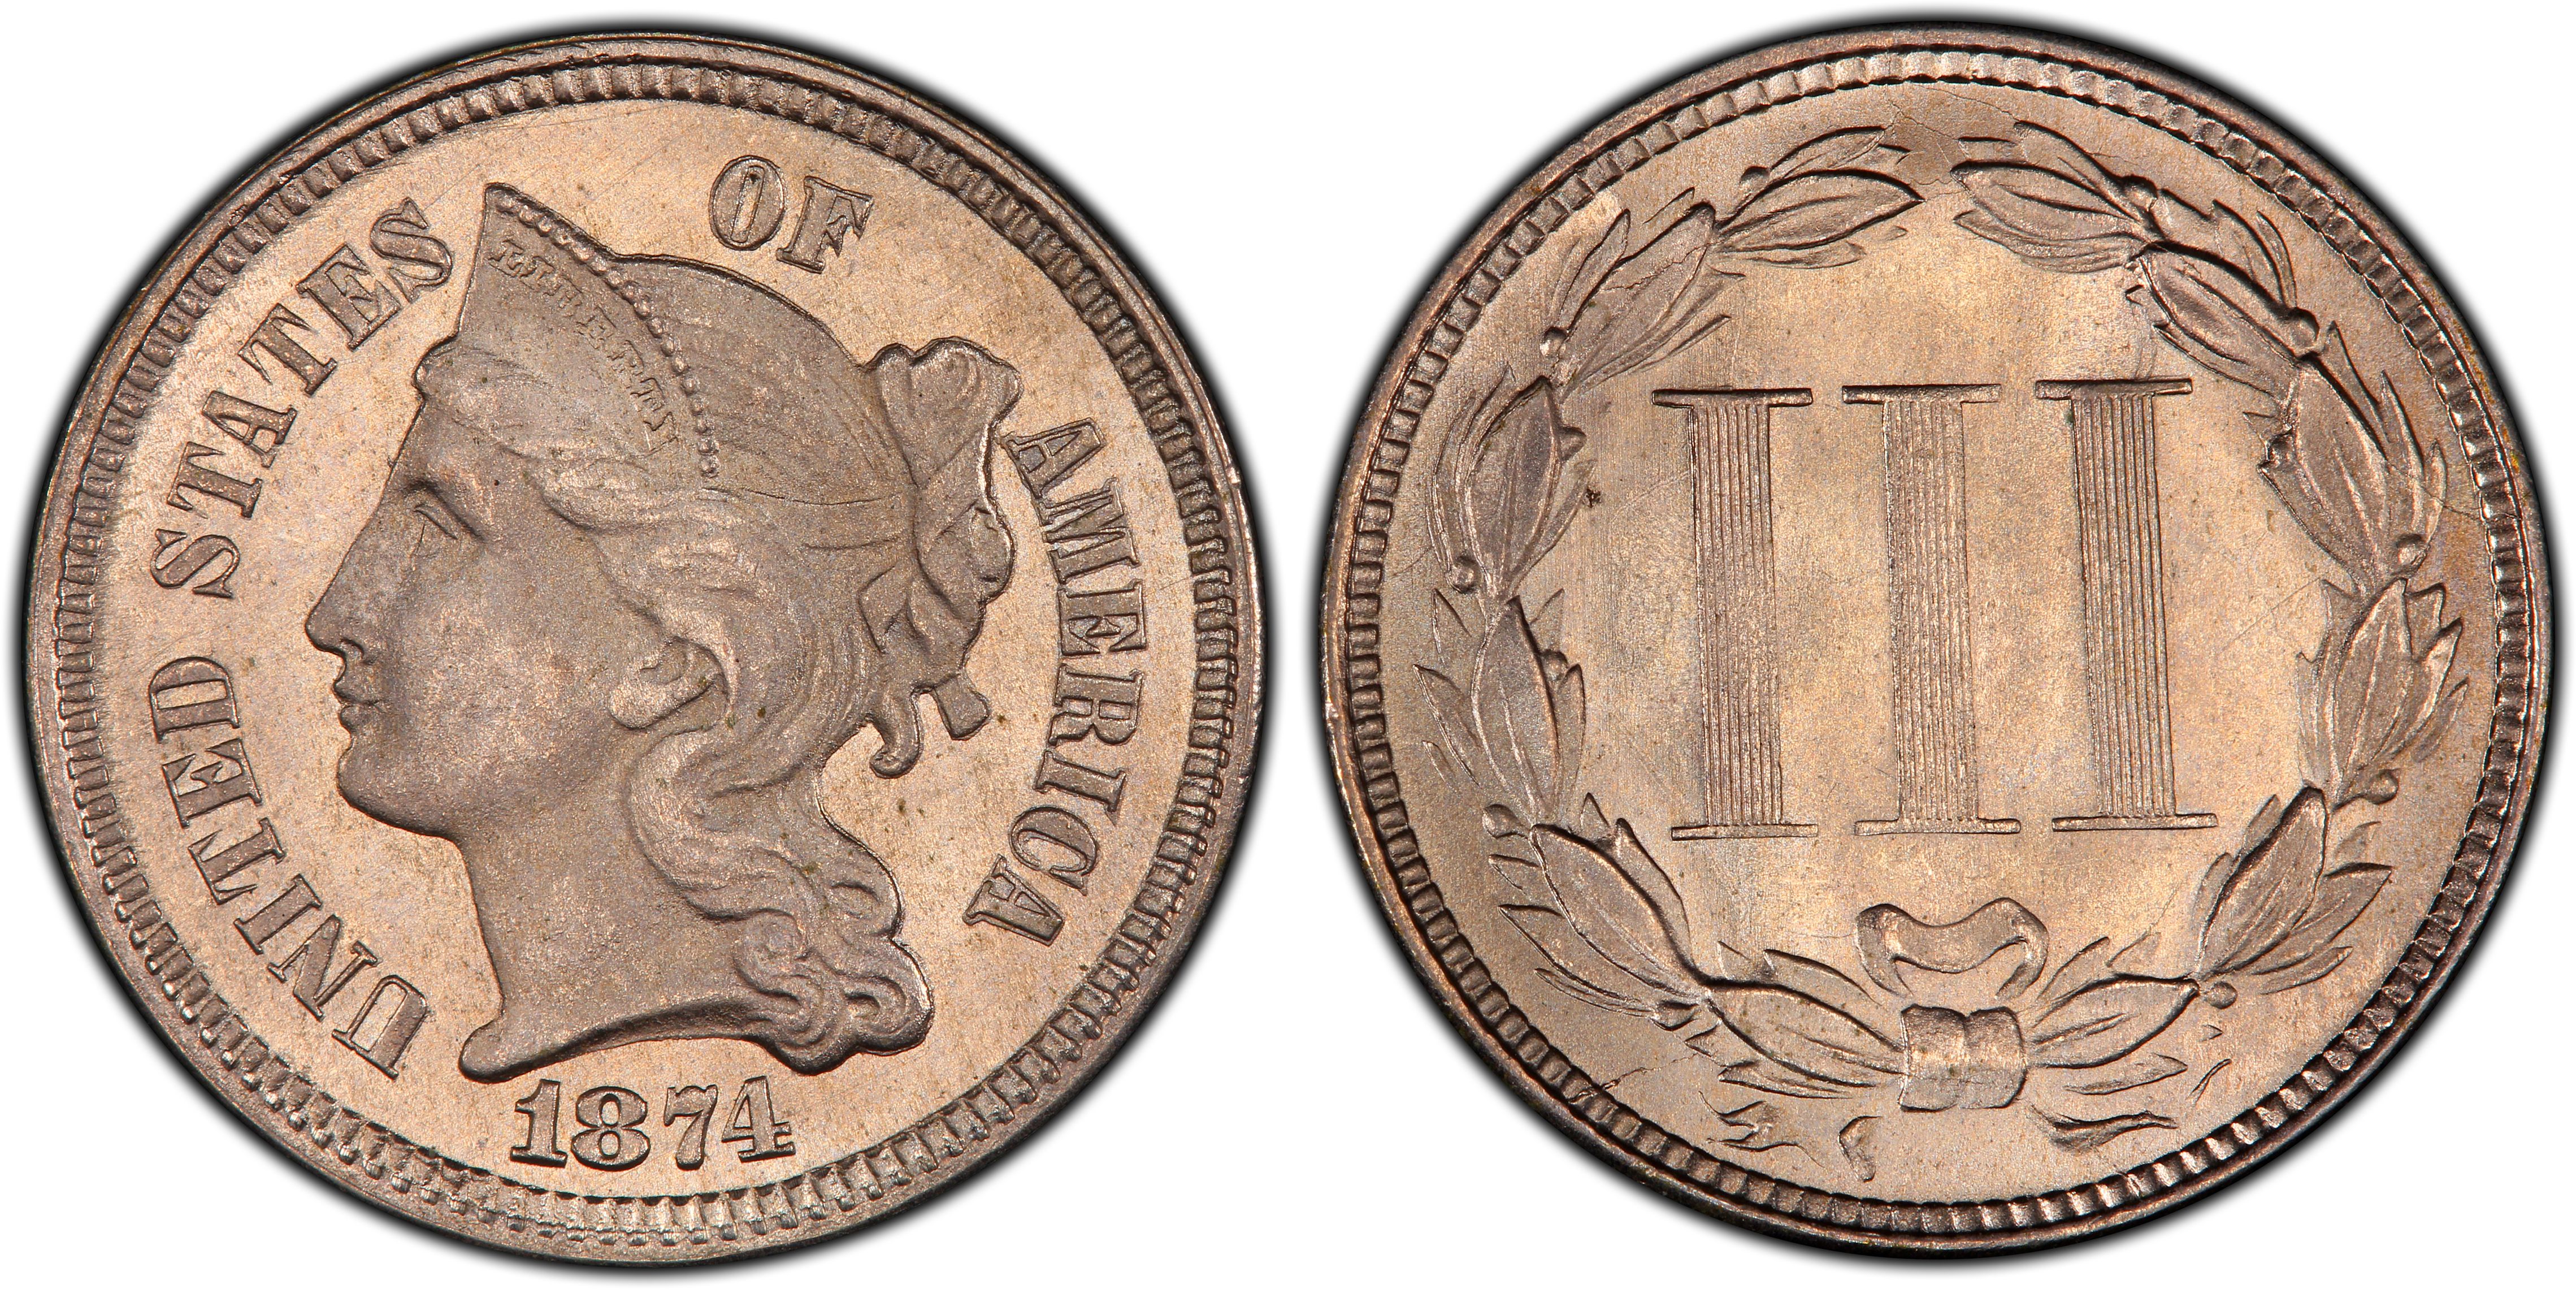 Coin de caisse 3 faces Diall en acier nickelé L. 30 mm, 4 pièces